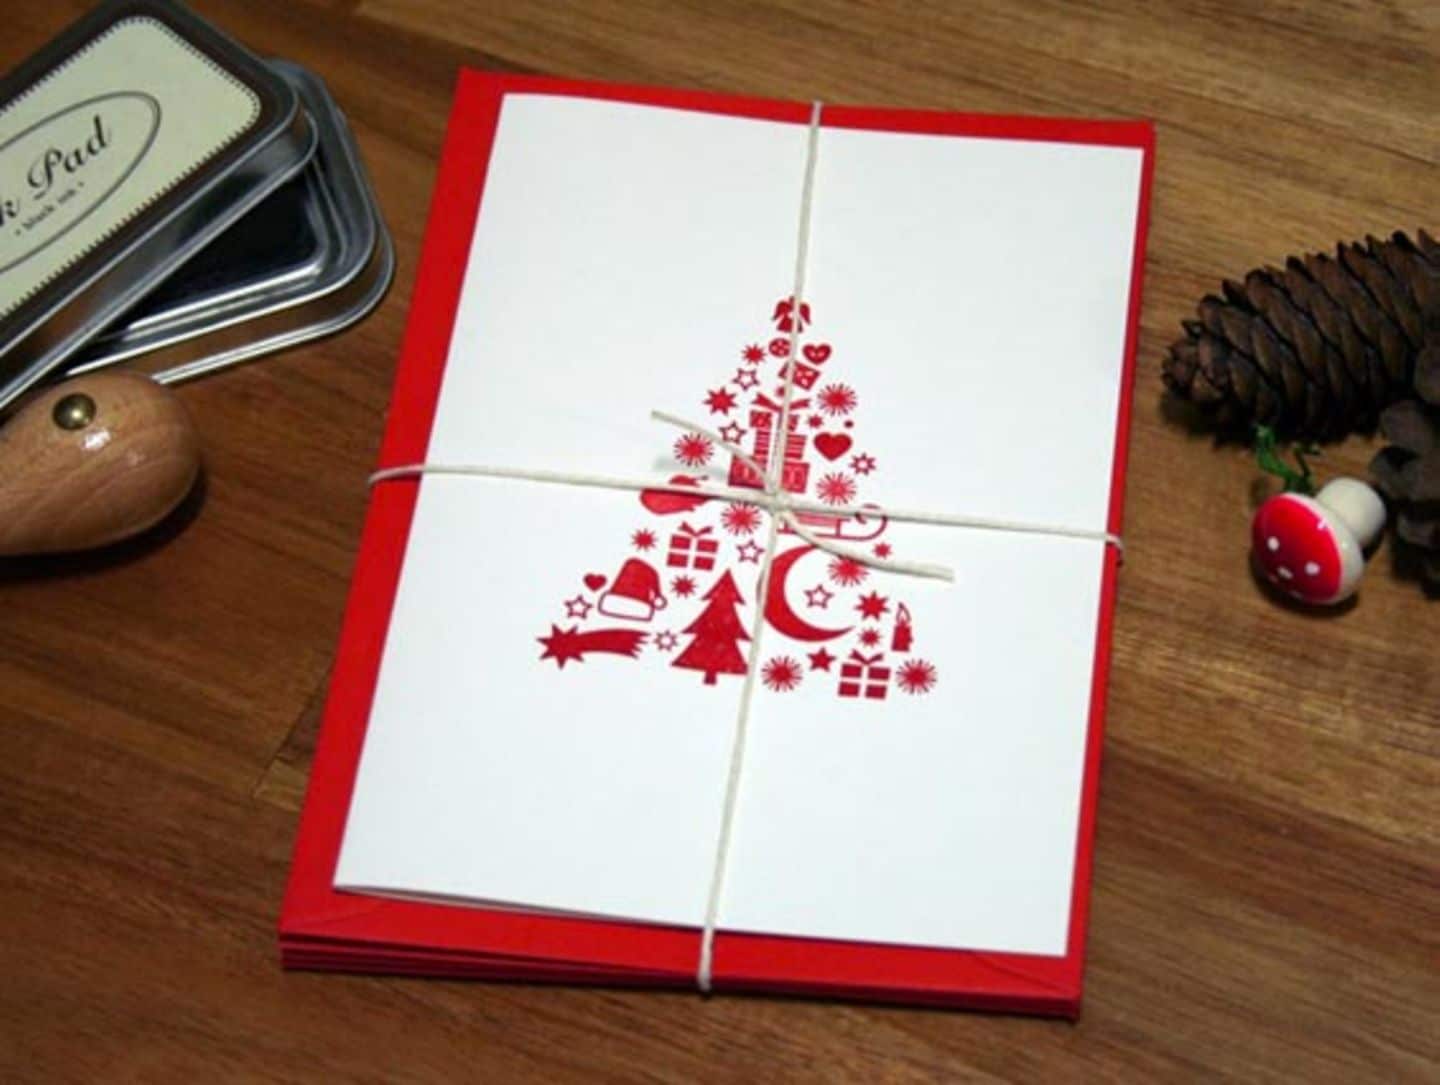 Weihnachtskarte mit aufgedrucktem roten Tannenbaum